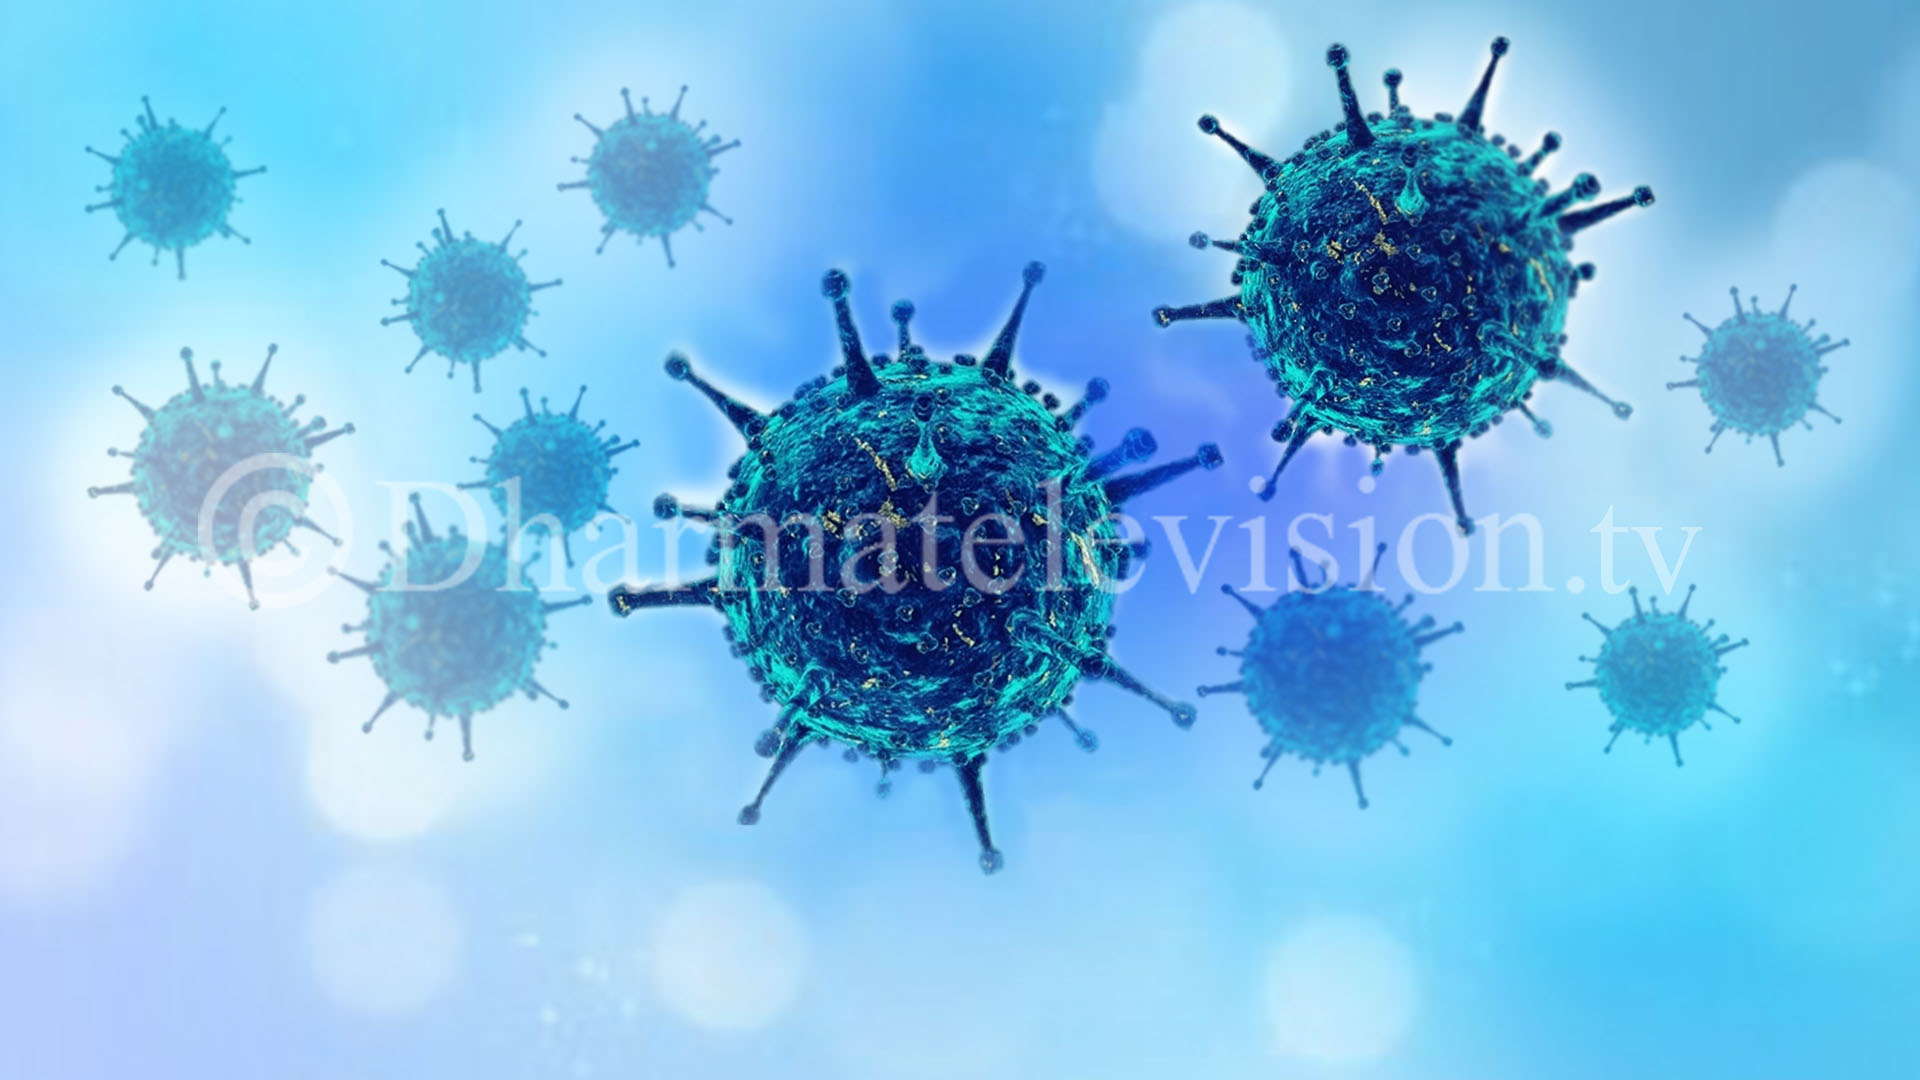 काठमाडौं उपत्यका लगायत २०4 जनामा ​​कोरोना भाइरस संक्रमण